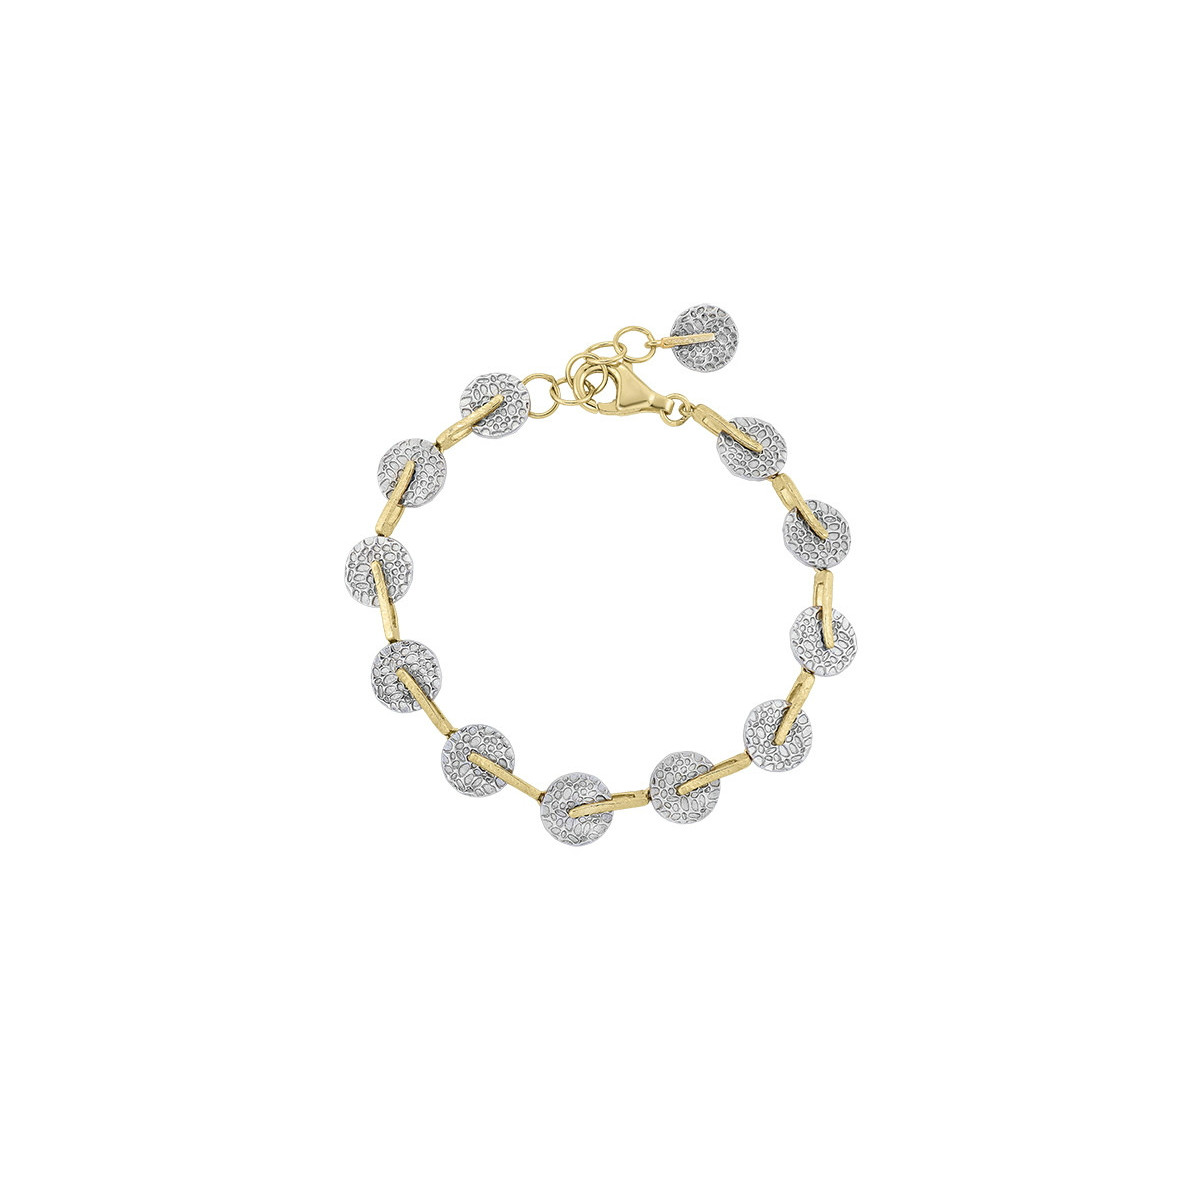 KYMBAL Bracelet in Silver. 18k Gold Vermeil